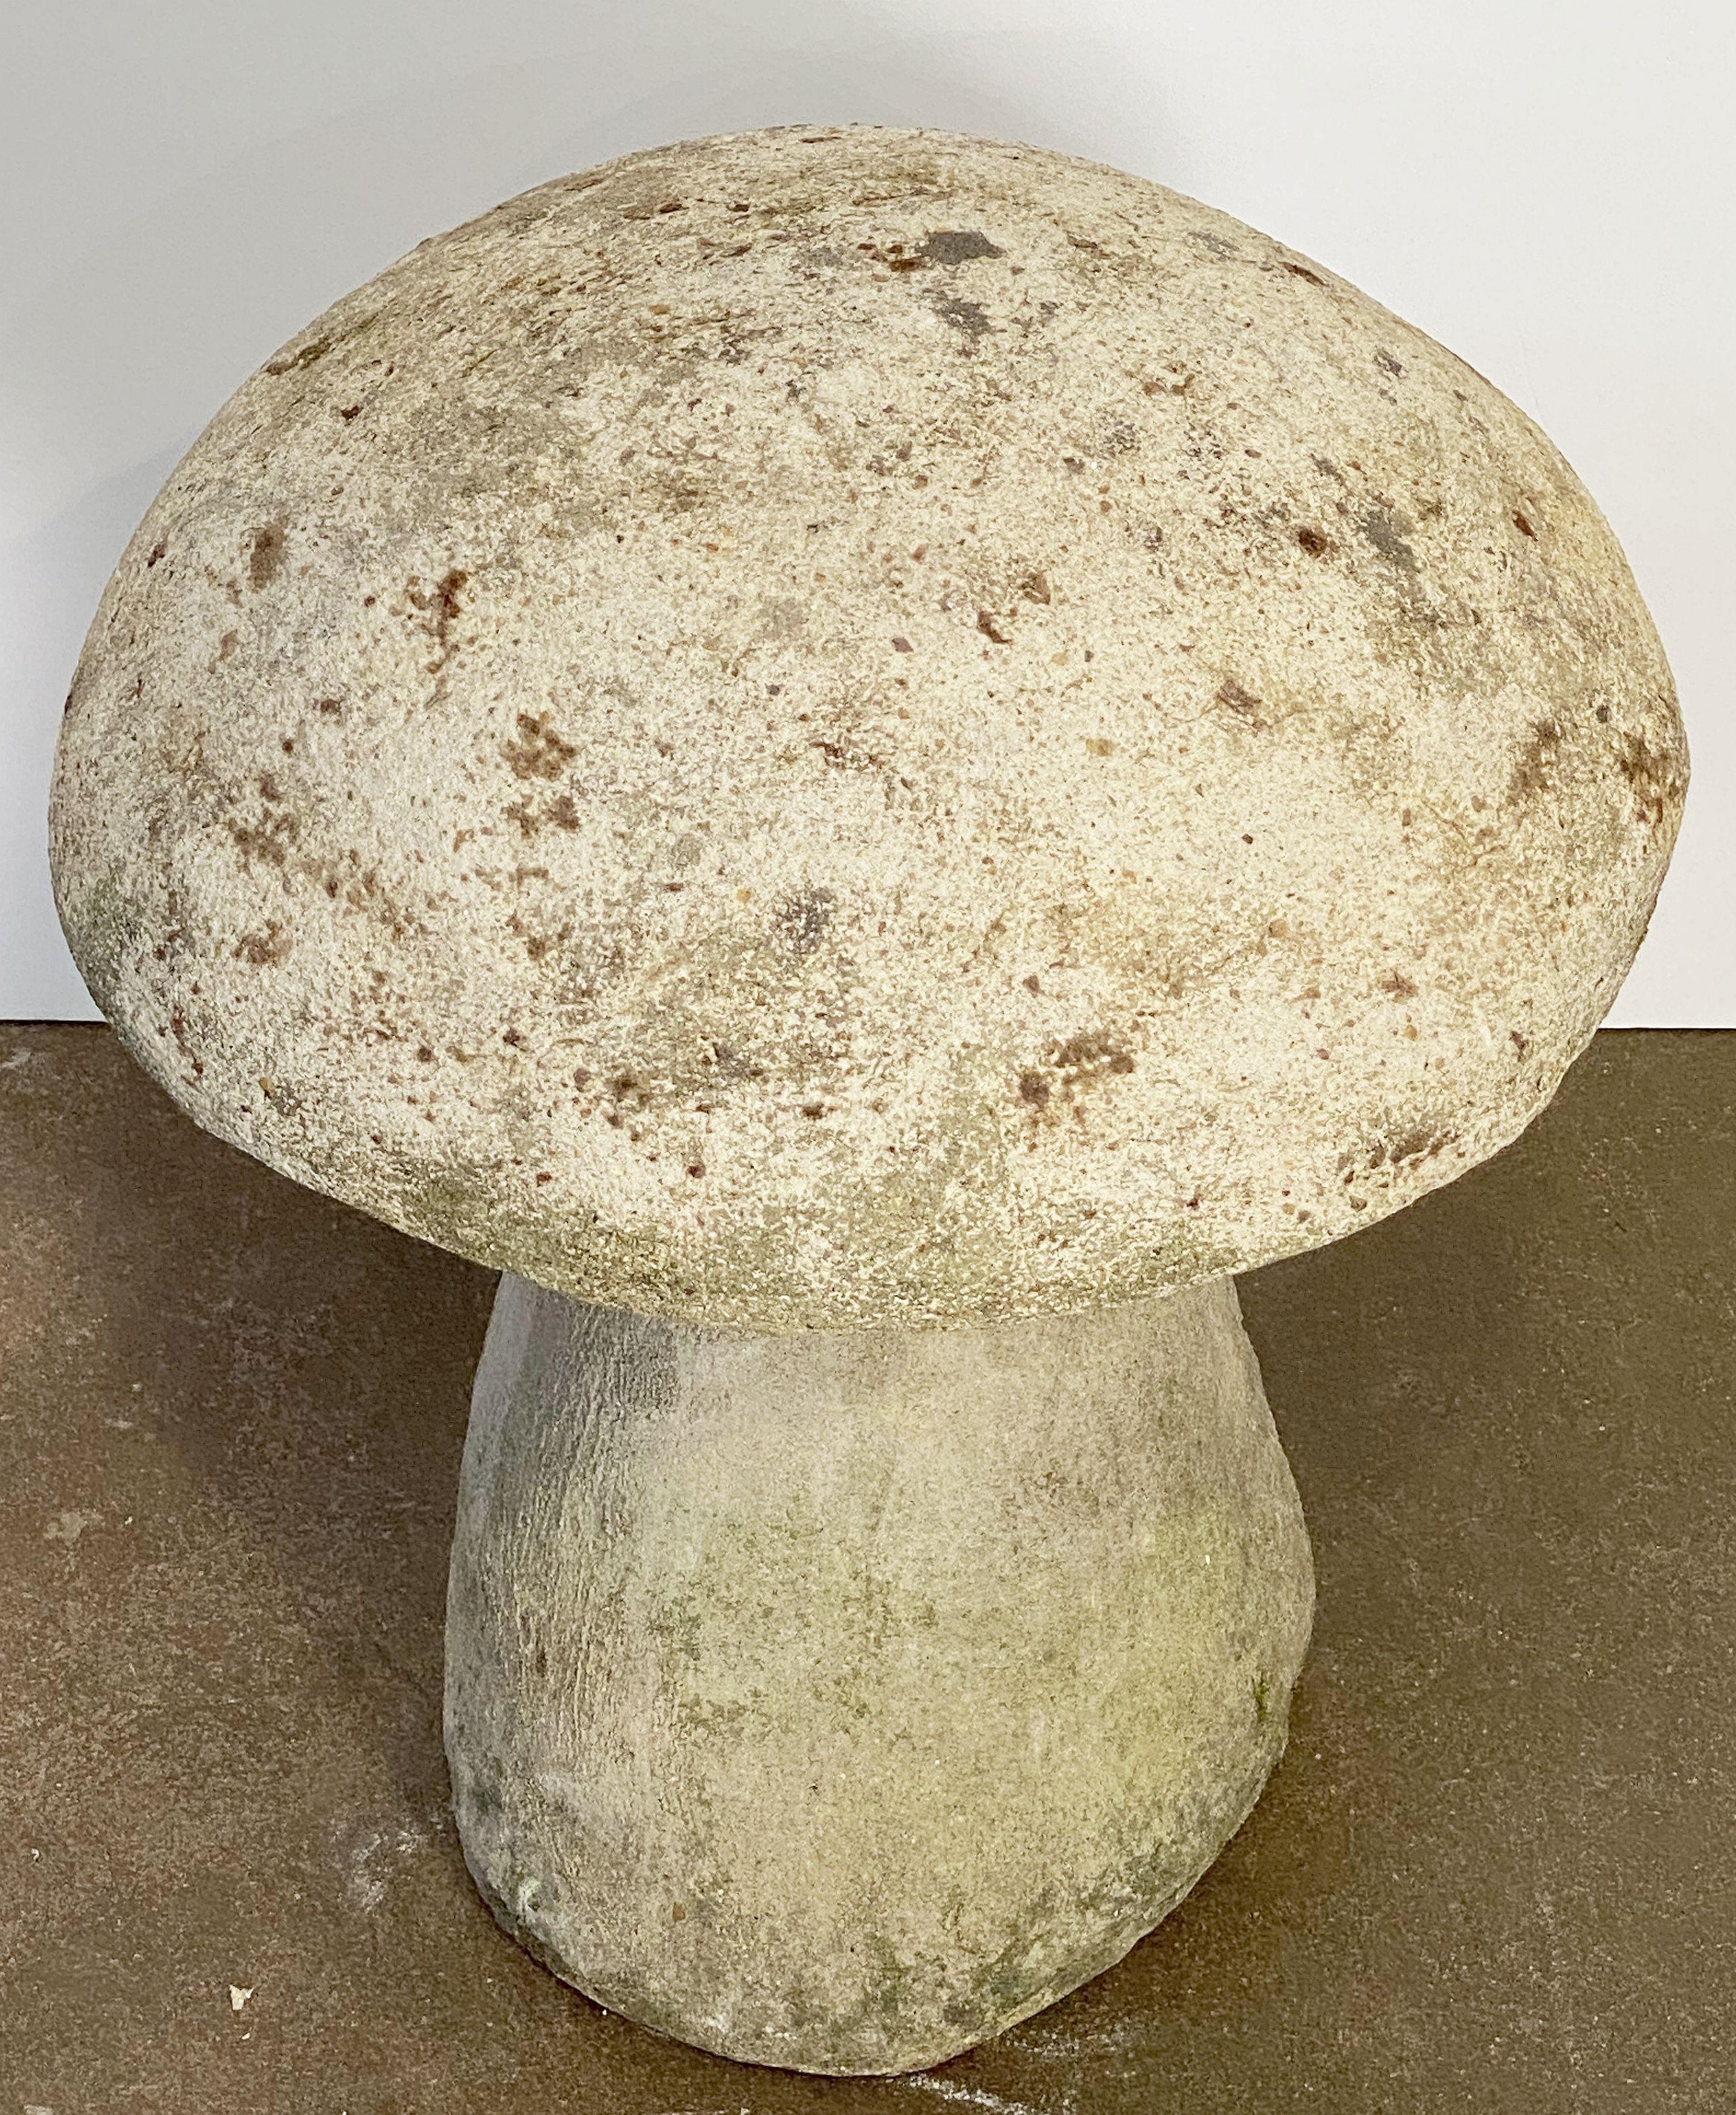 mushroom stones